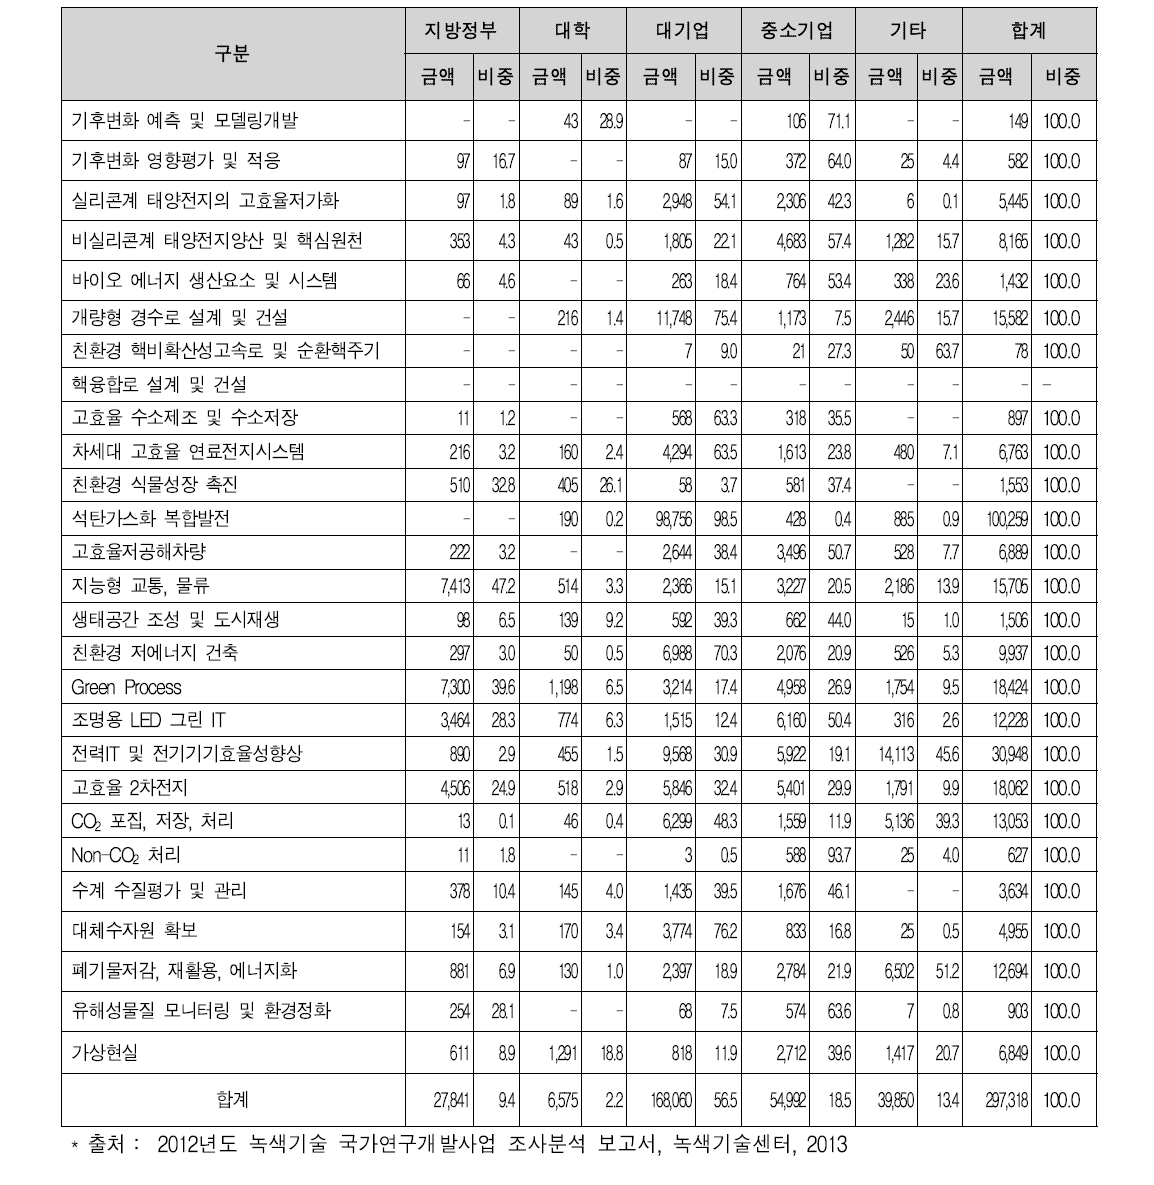 27대 중점녹색기술 매칭펀드 투자현황(2012)